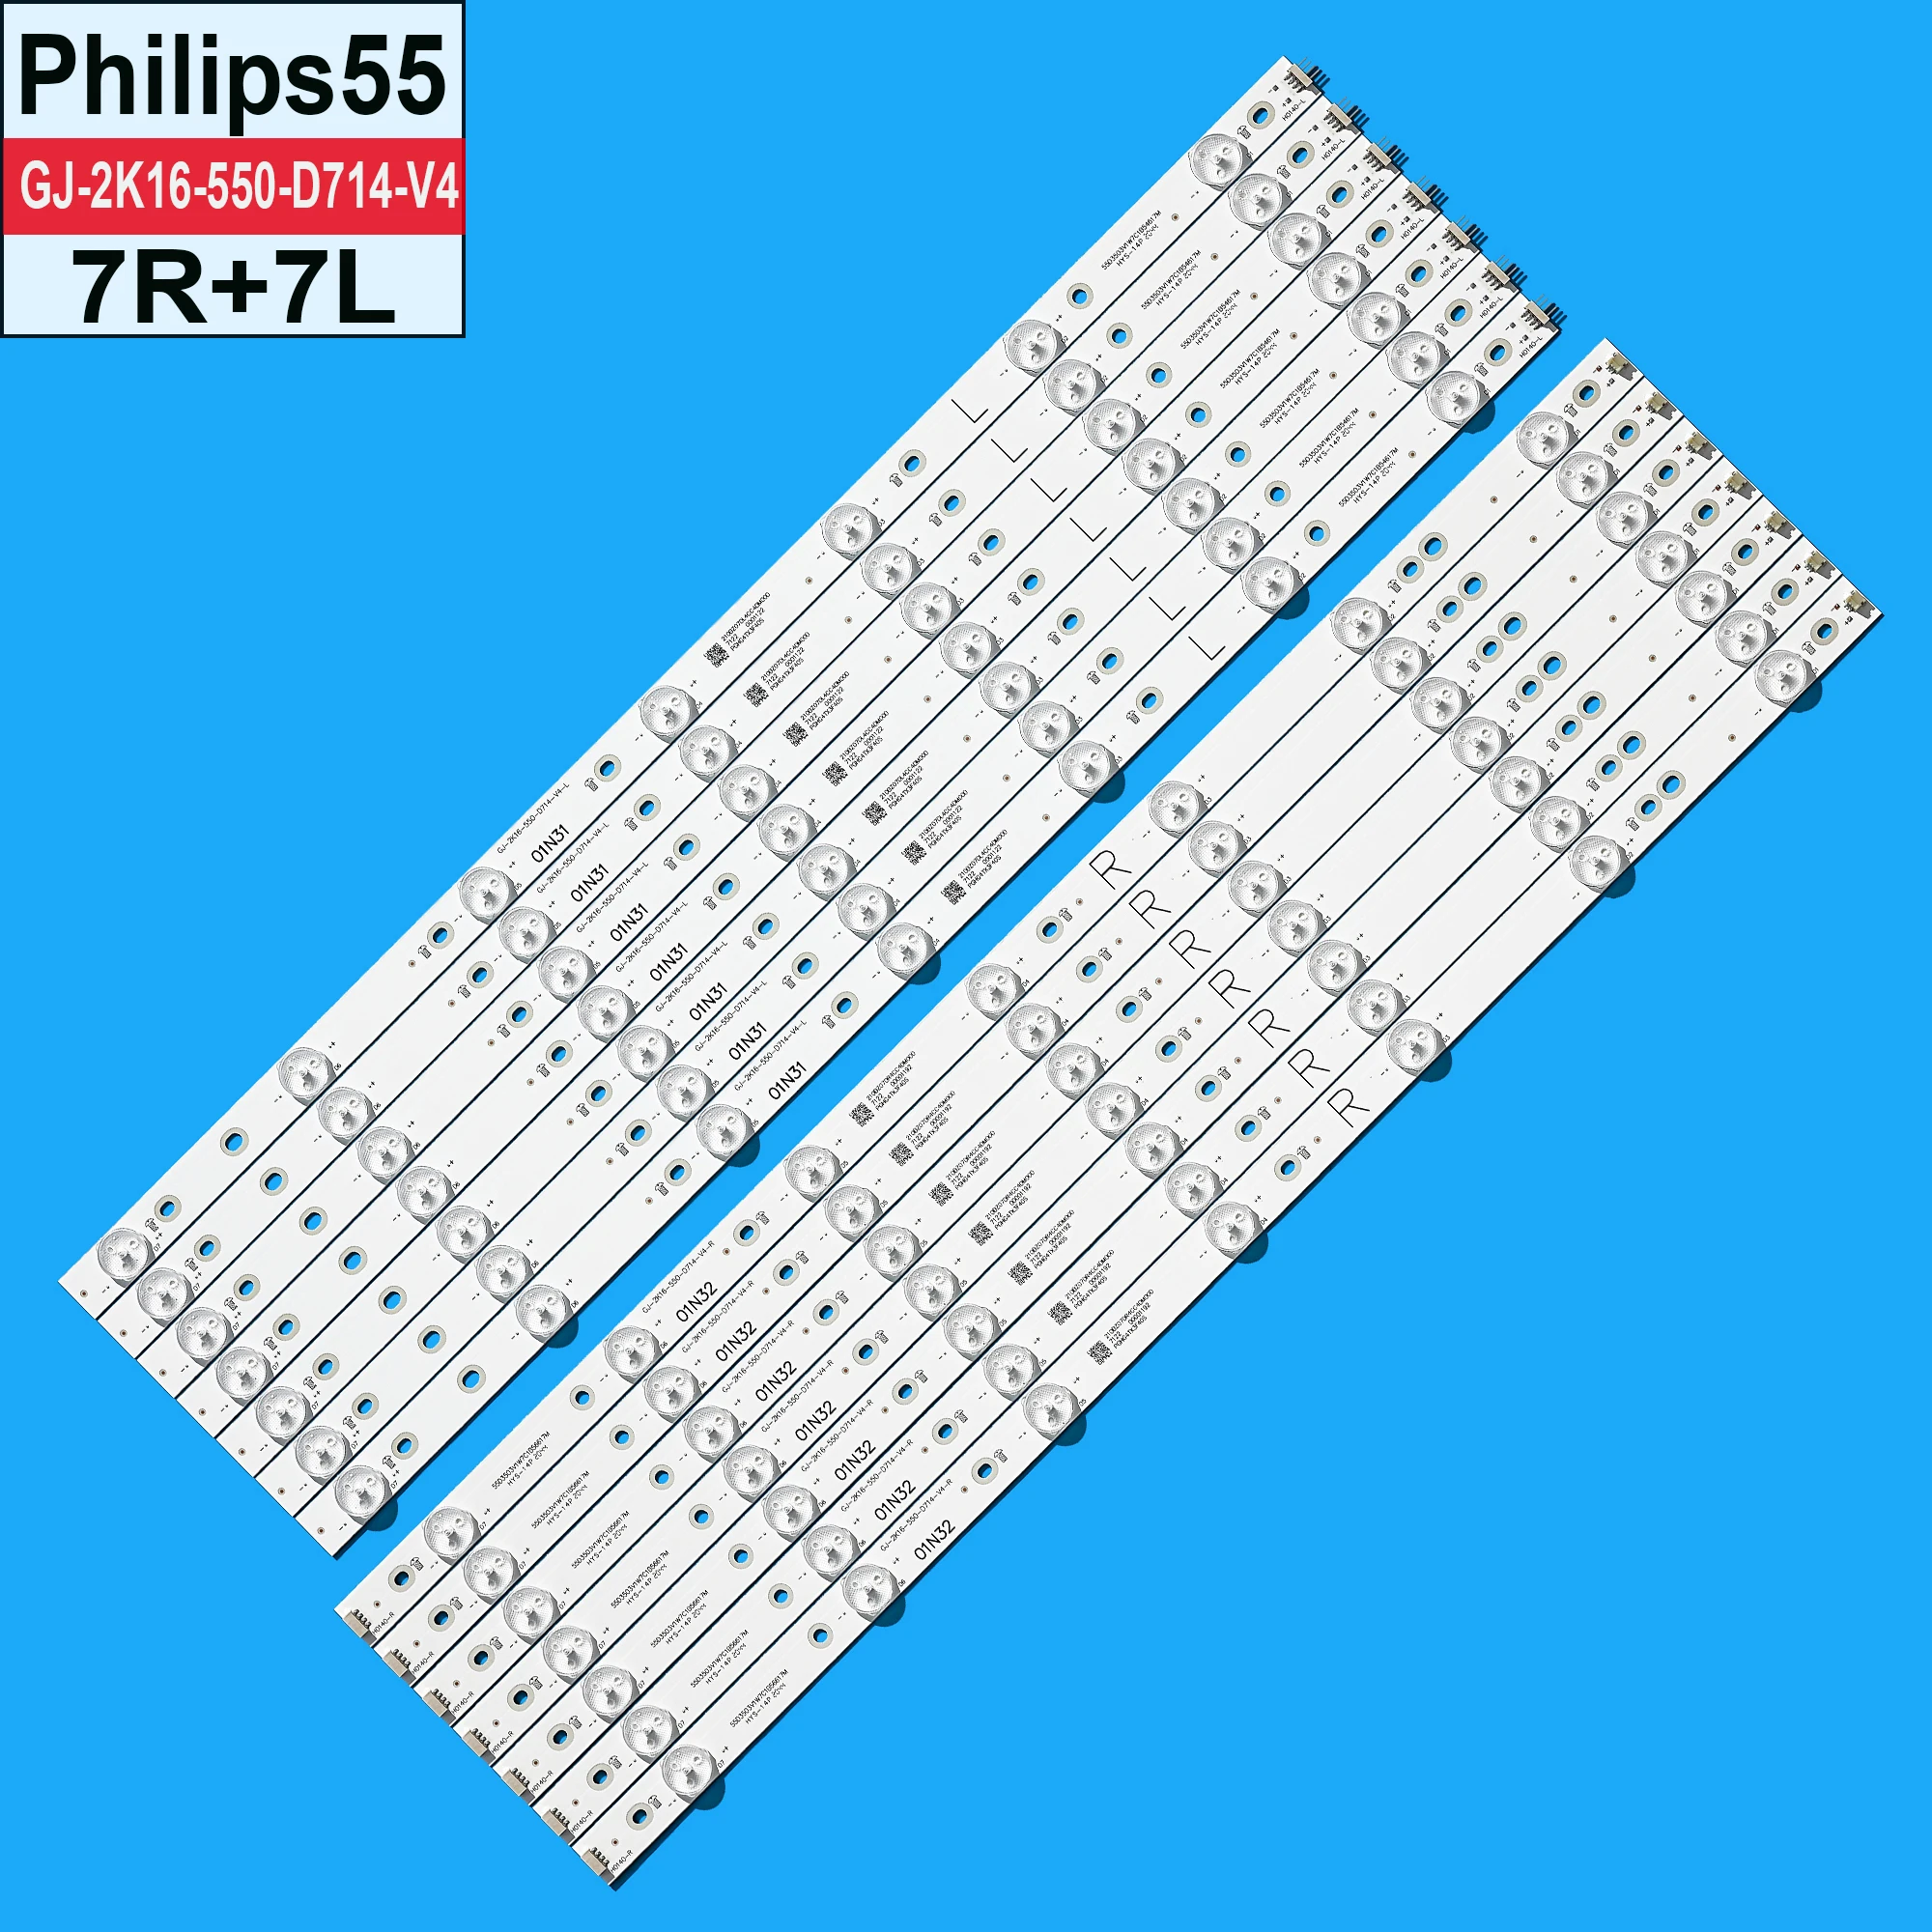 

NEW LED backlight strip for Philips 55PUG6102 /78 55PUS6262 55PUS7272 55PUS6581 55PUS6561 55PUS6101 55PFF5701 55PUS6501 LB55072